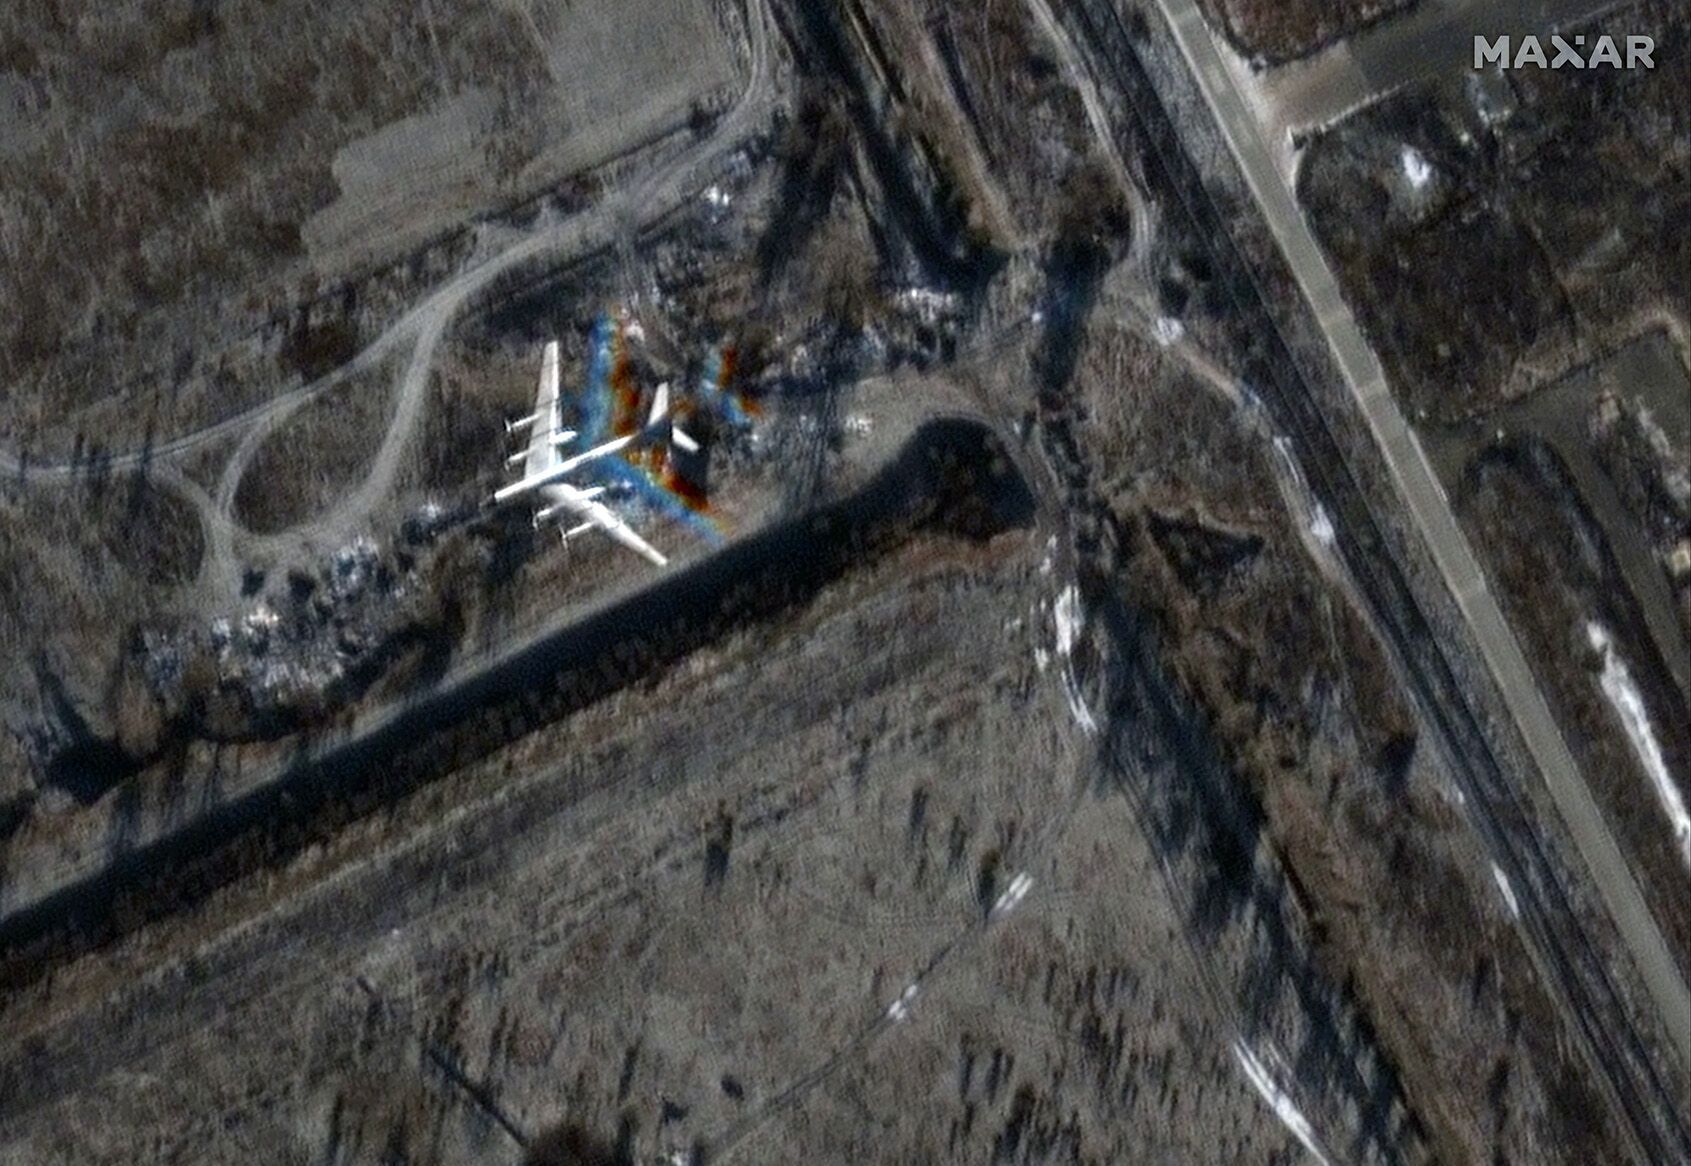 Появились спутниковые снимки последствий удара по аэродрому ''Энгельс'': место взрыва – рядом с бомбардировщиками